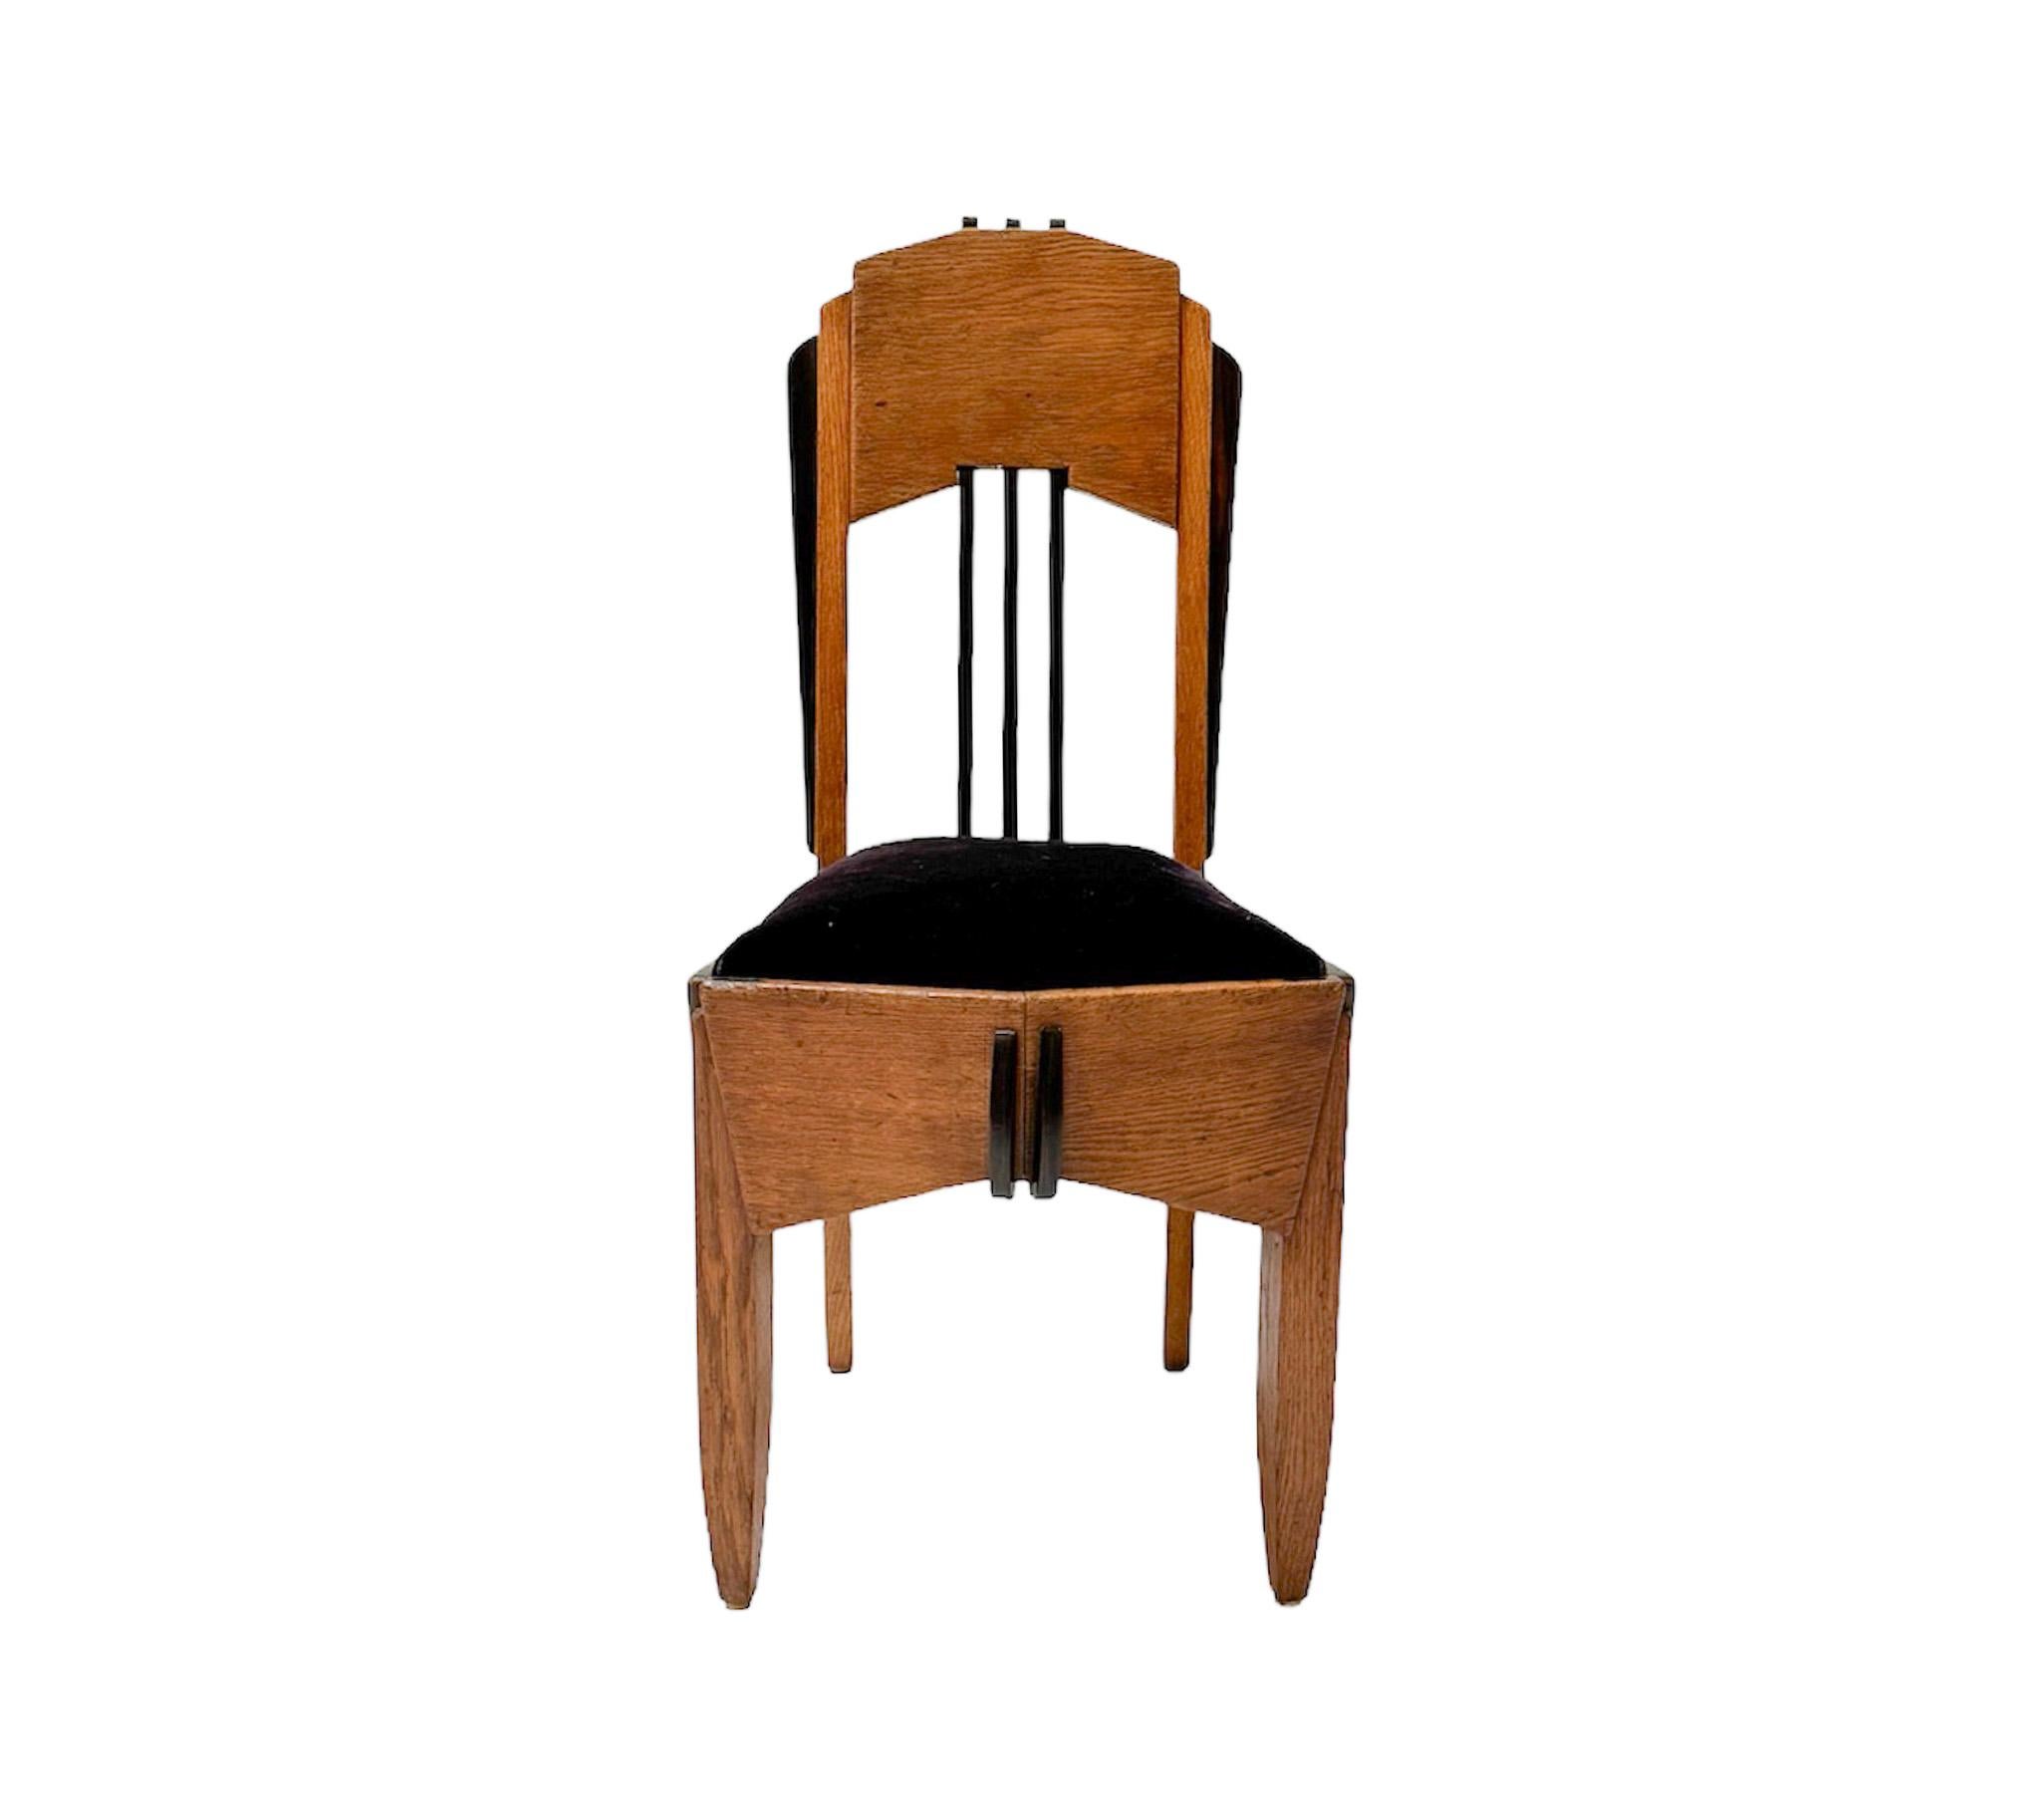 Early 20th Century Oak Art Deco Amsterdamse School Side Chair by Hildo Krop, 1920s For Sale